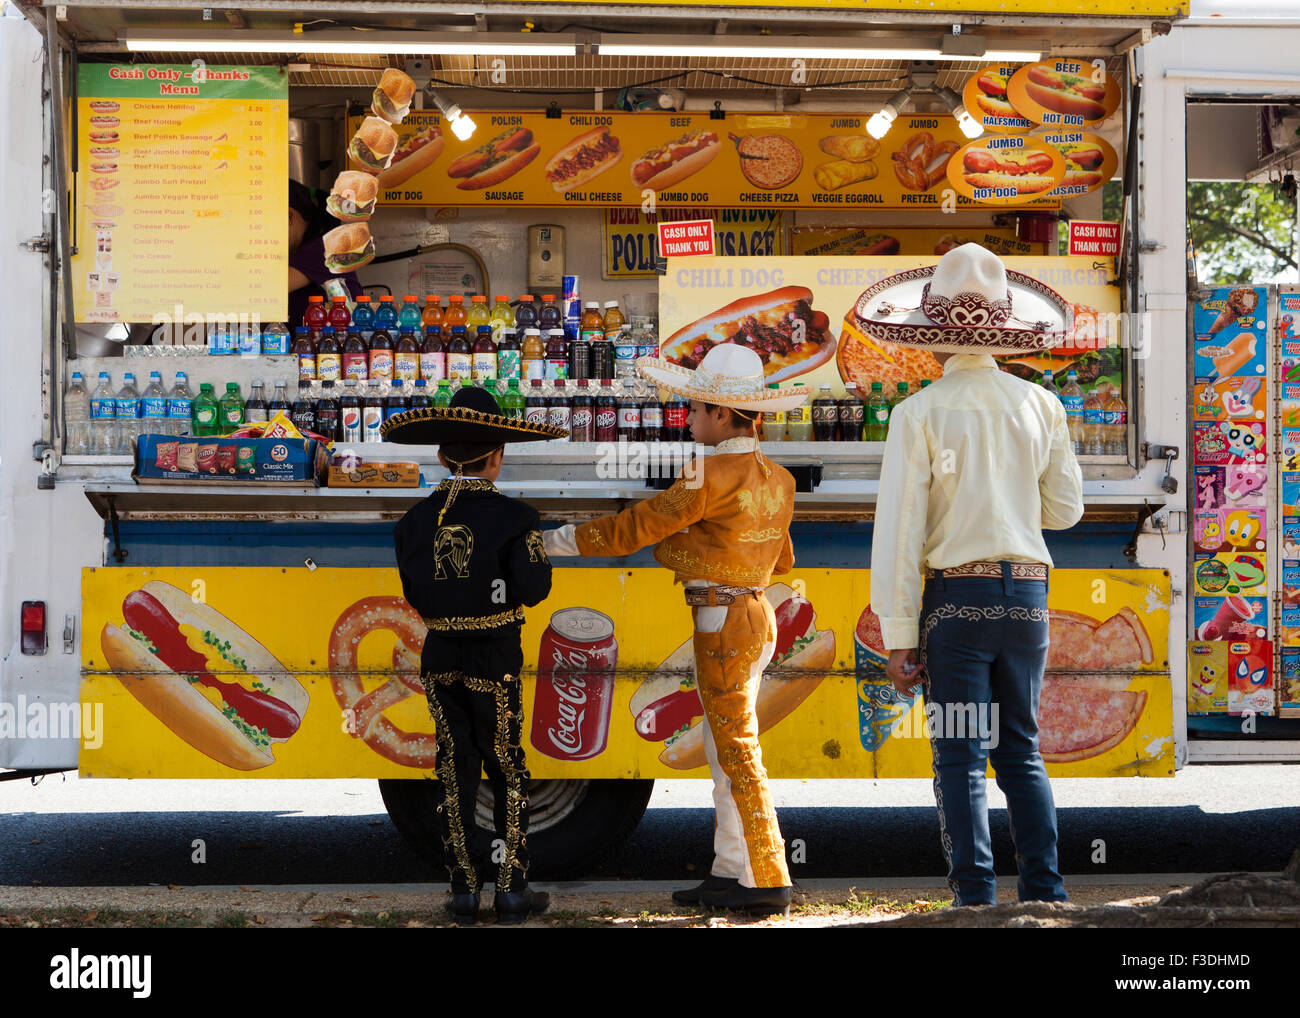 L'américano-mexicaine des garçons dans vaquero tenues et sombreros standing in front of hot dog food truck - Washington, DC USA Banque D'Images